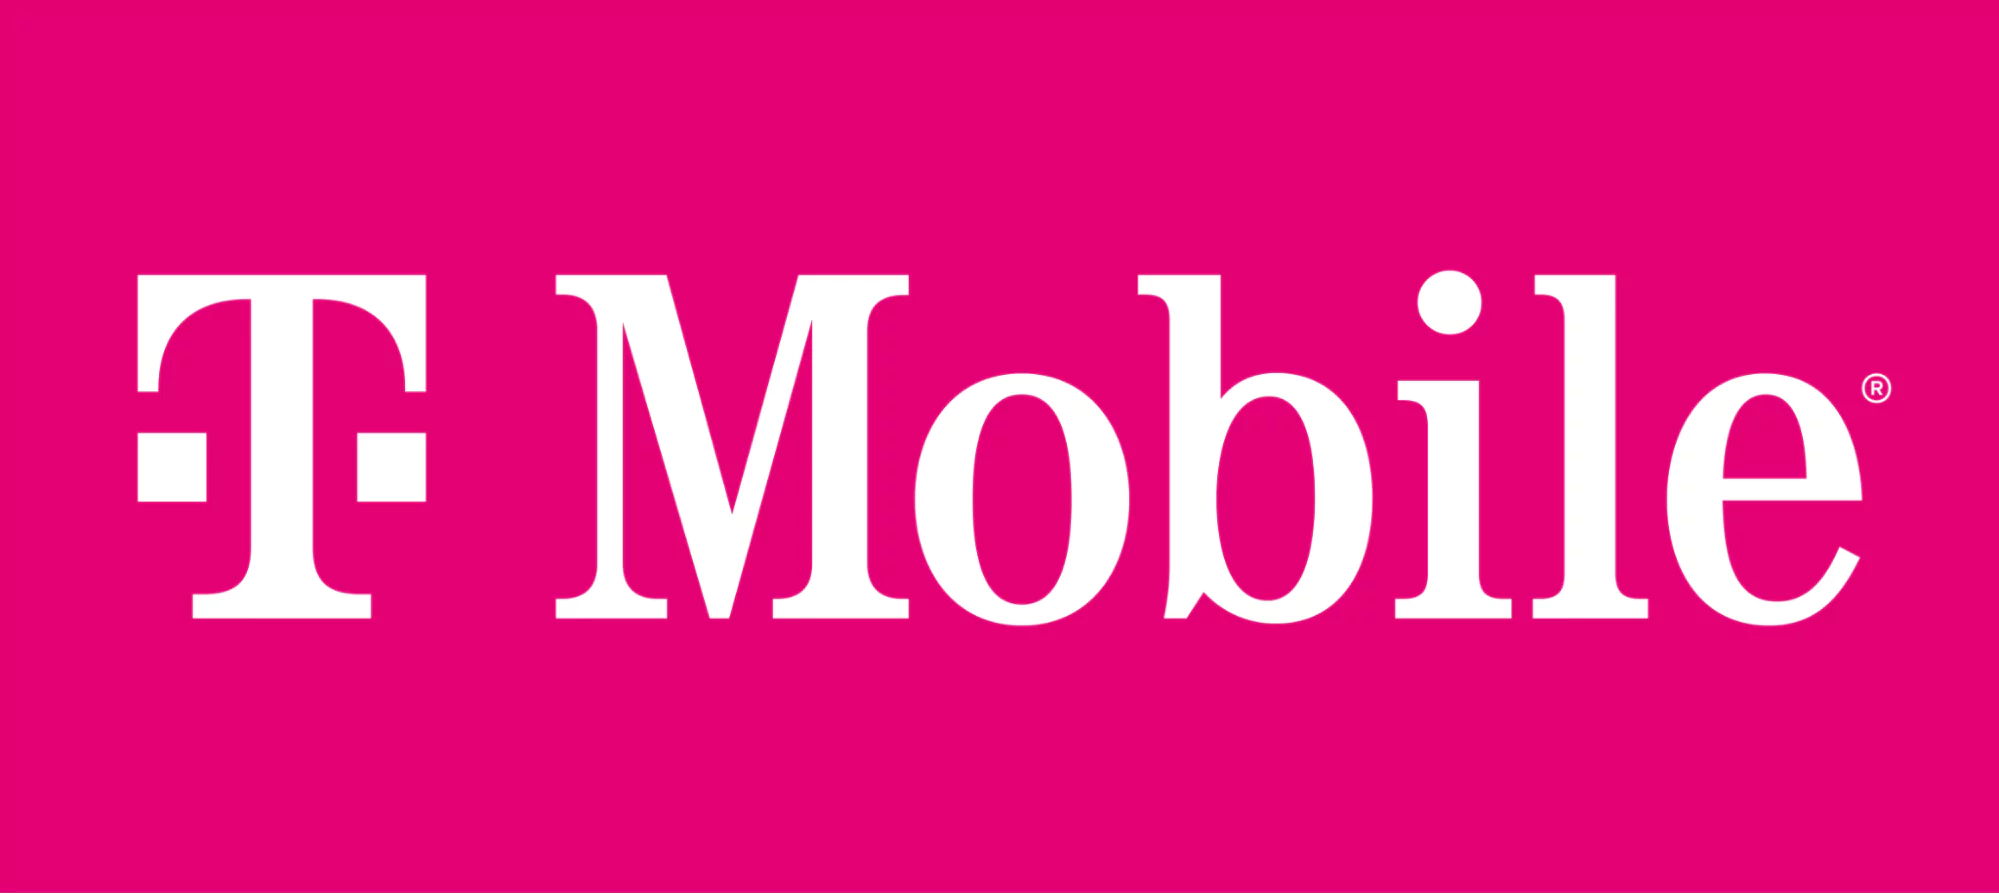 マゼンタの T-Mobile ロゴと白い文字